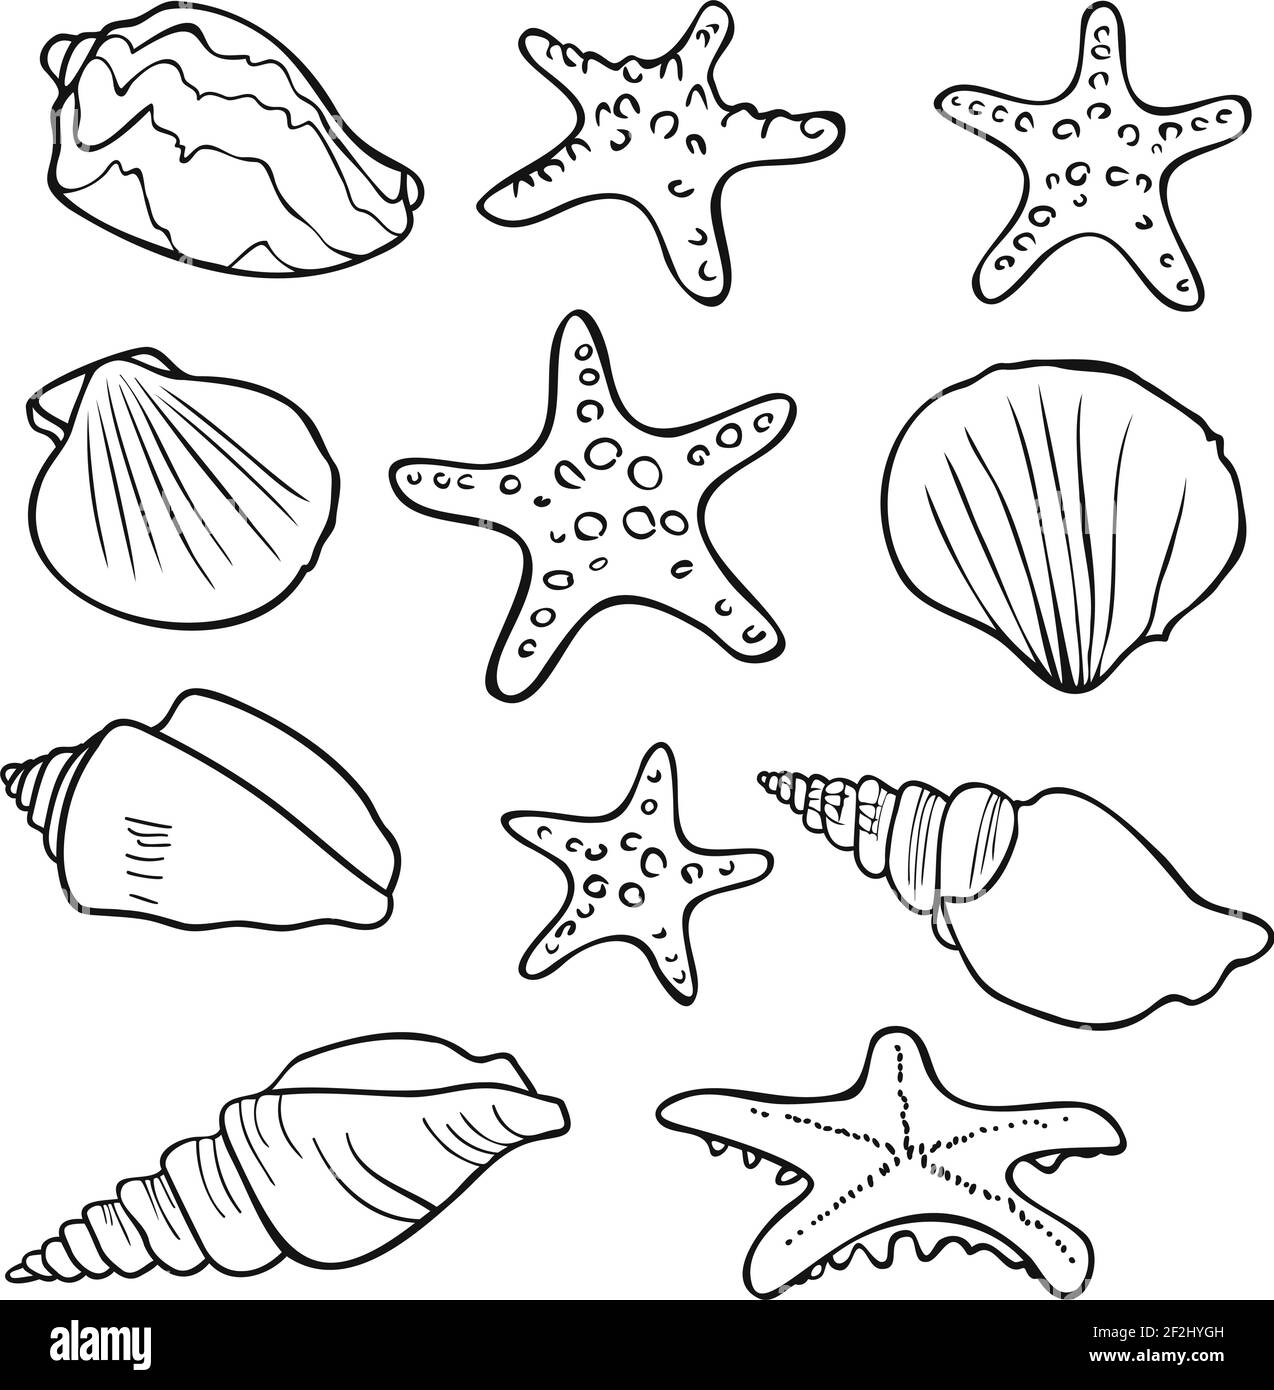 Schwarz-weiße Silhouetten von Muscheln und Startfischen. Design für das ausmalen. Vector Kollektion. Stock Vektor